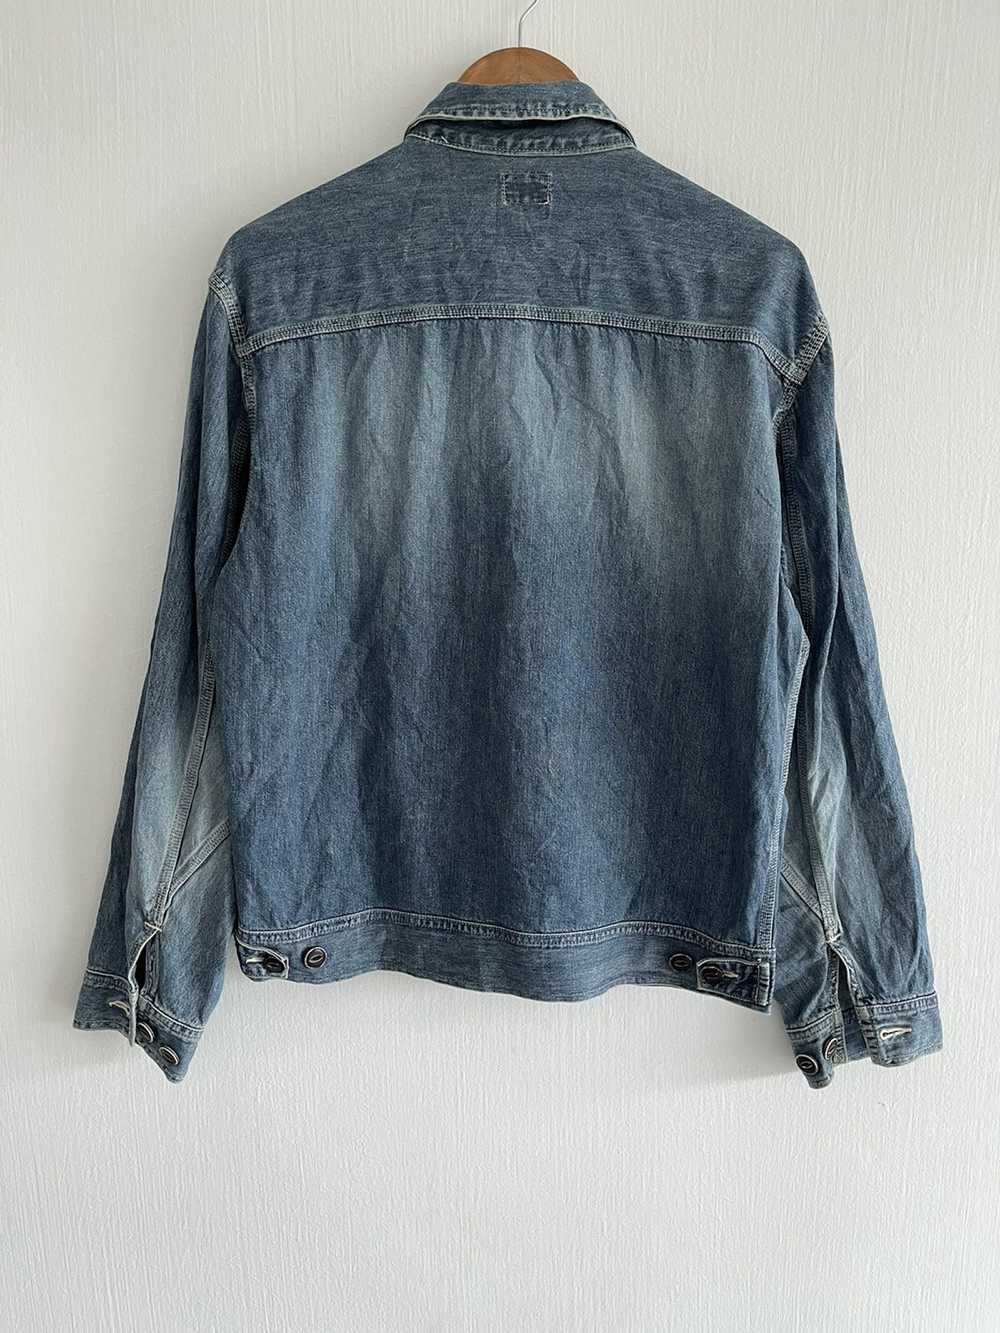 Japanese Brand × Vintage Go West workwear jacket - image 2